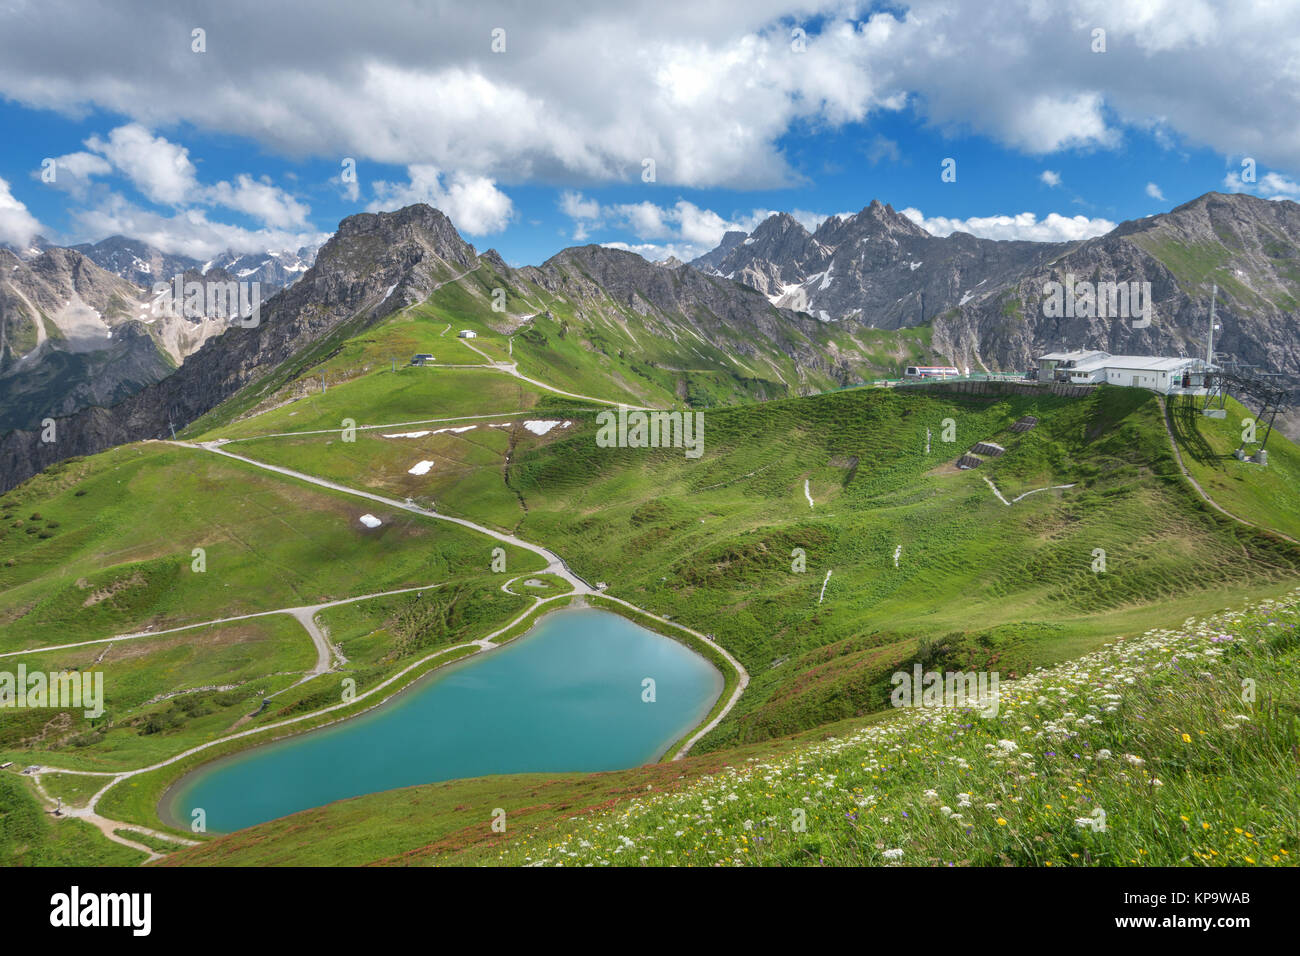 Riezler alpsee sur l'impressionnant paysage de montagne en kanzelwandbahn Banque D'Images